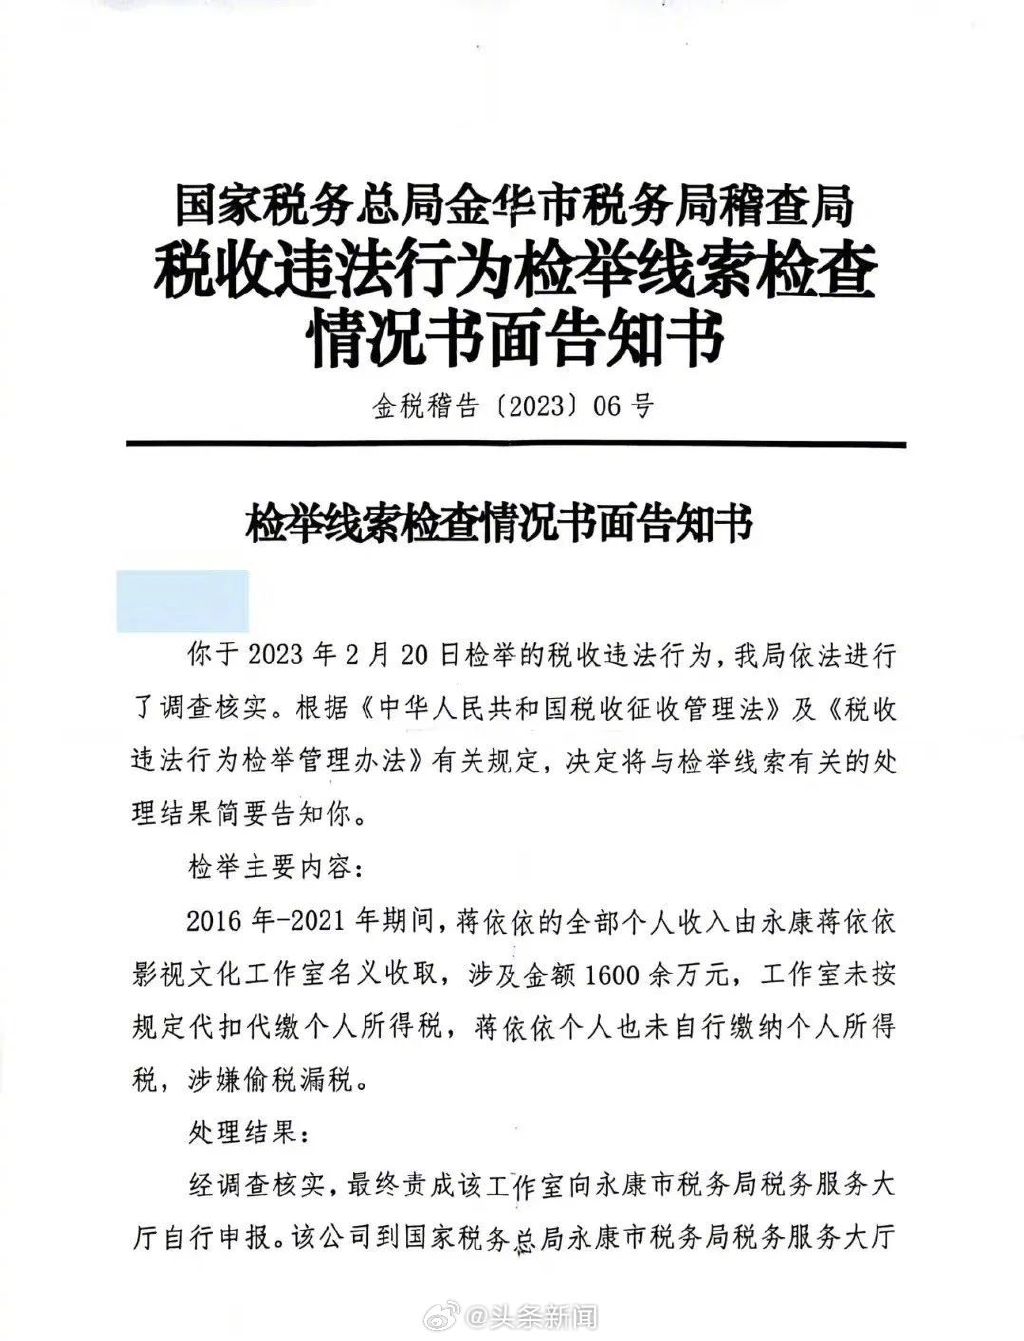 爆料人在2月實名向稅務局舉報蔣依依逃漏稅，7月收到稽查局檢查告知書。